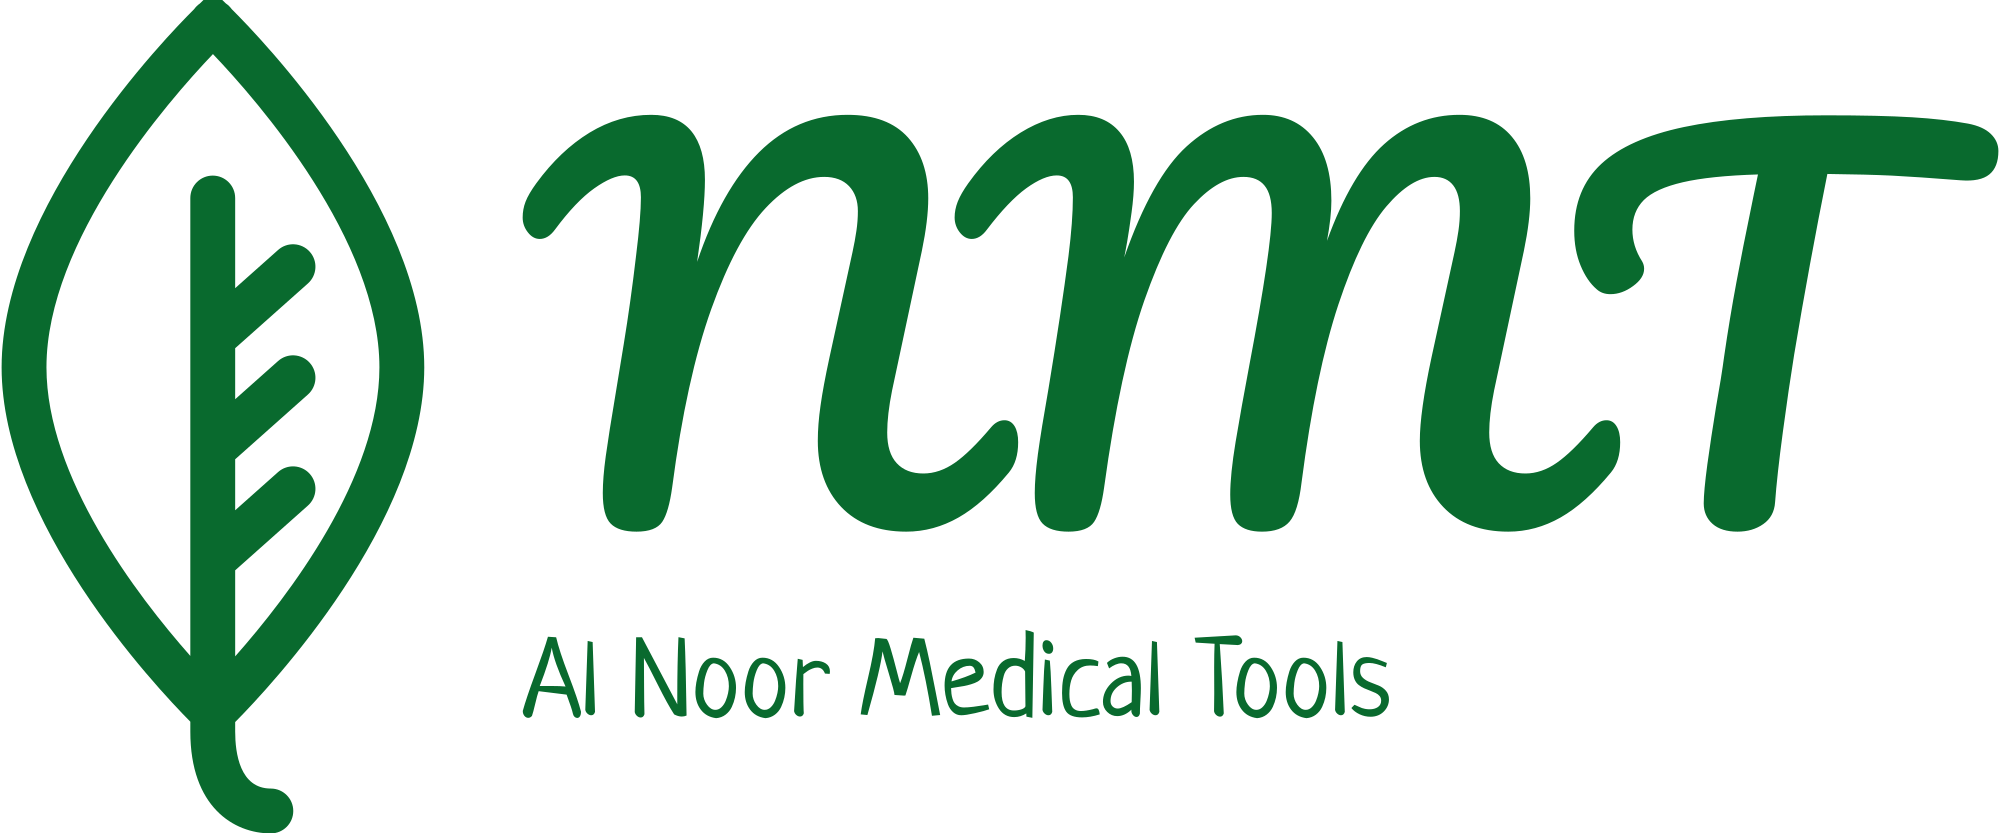 Al Noor Medical Tools